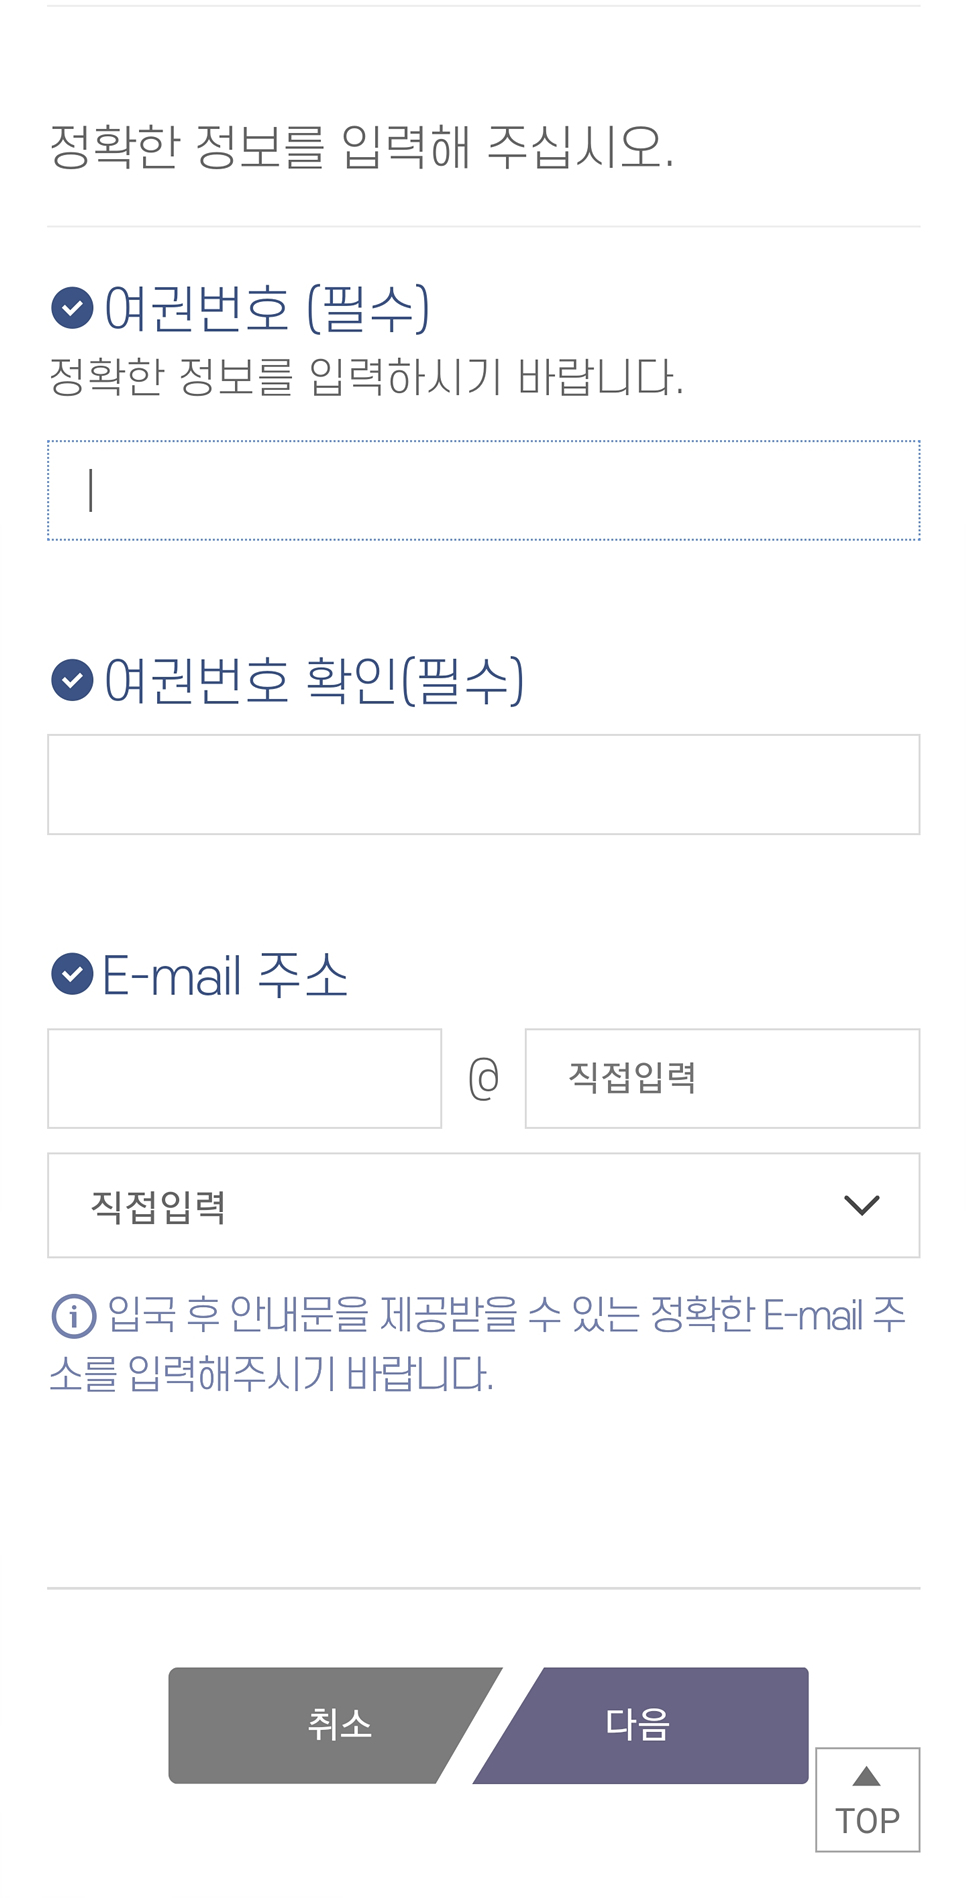 인천공항 입국절차 한국입국 최신 큐코드 Q코드 작성법